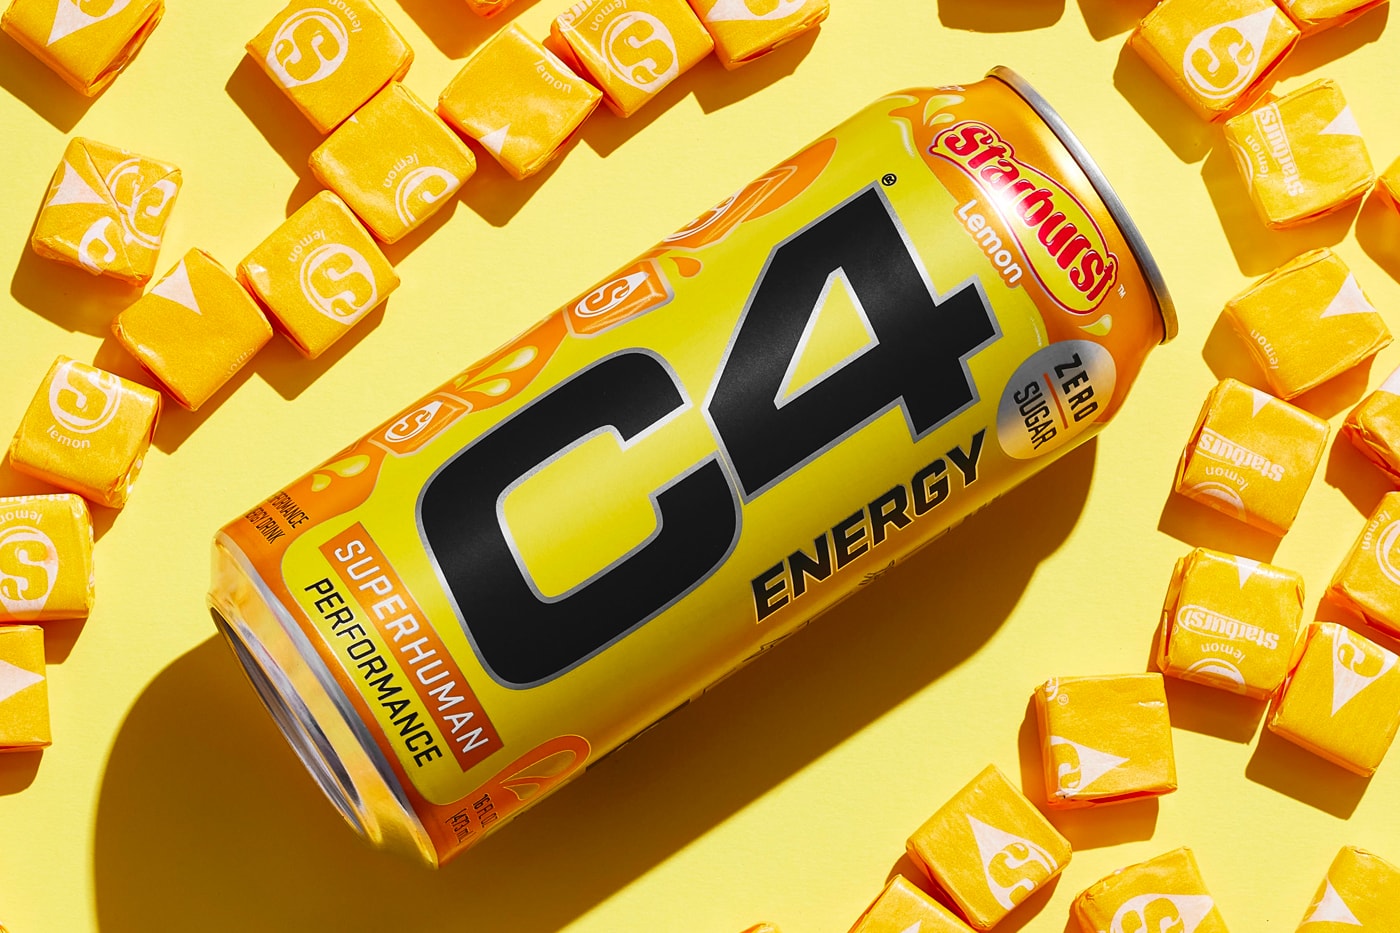 Starburst C4 Energy Drinks Release Taste Review Nutrabolt Mars Wrigley